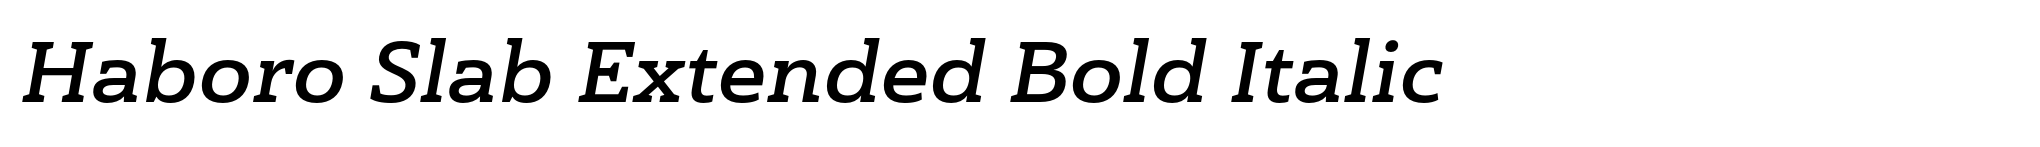 Haboro Slab Extended Bold Italic image